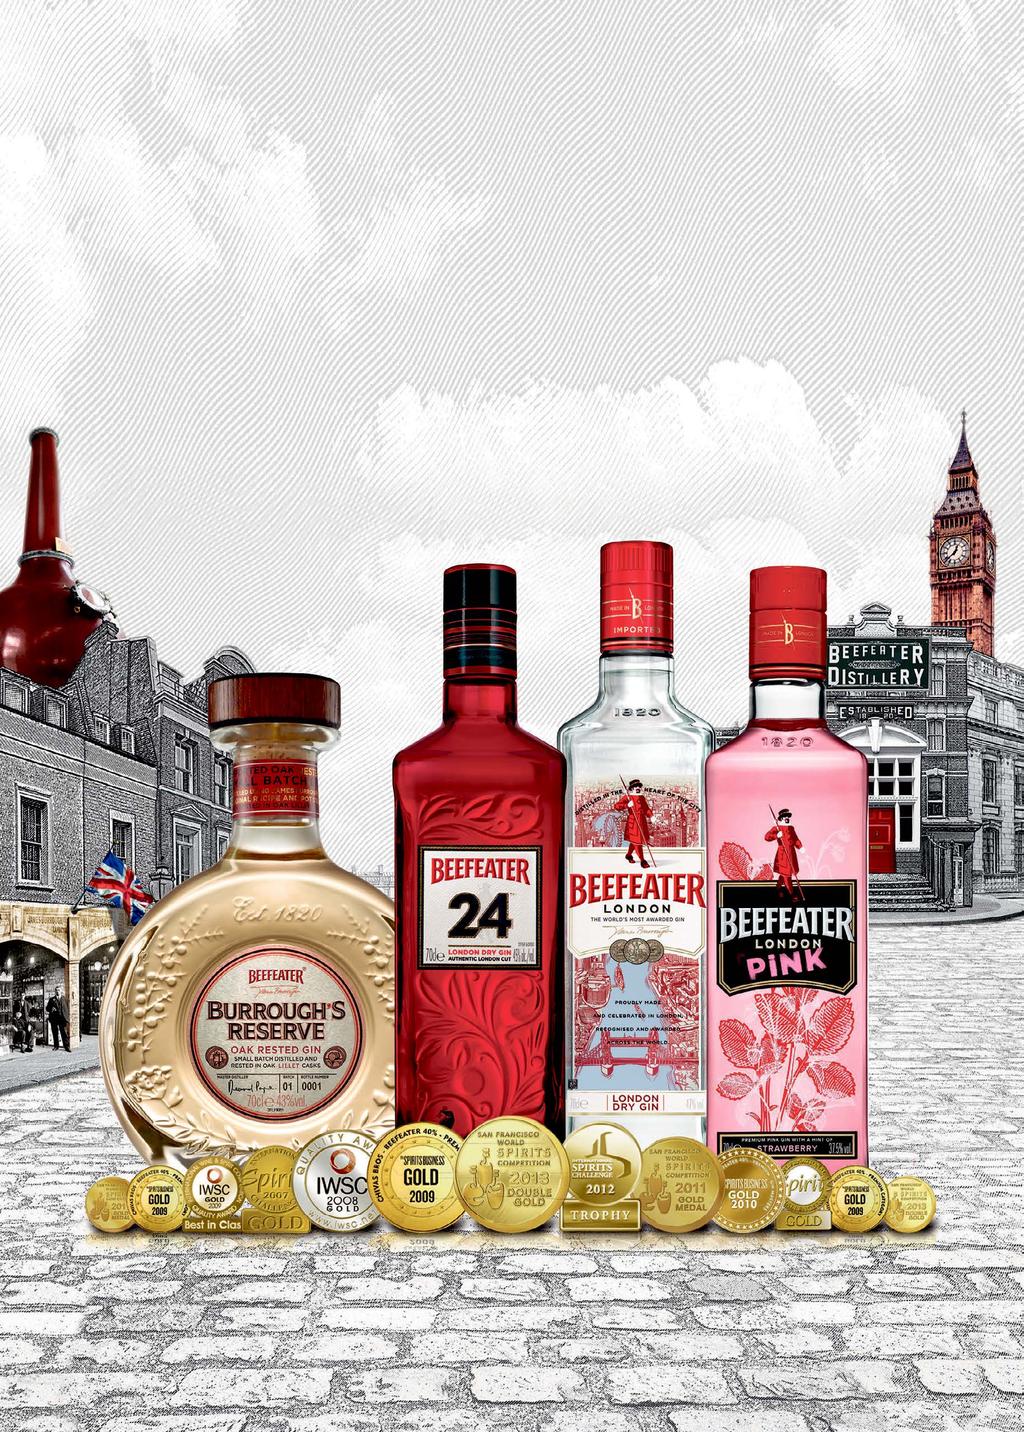 28 5 Pernod Ricard Denmark Kom og smag på vores udvalg af kvalitets gin Beefeater London Dry - er den eneste premium gin, som stadig tilvirkes i London.